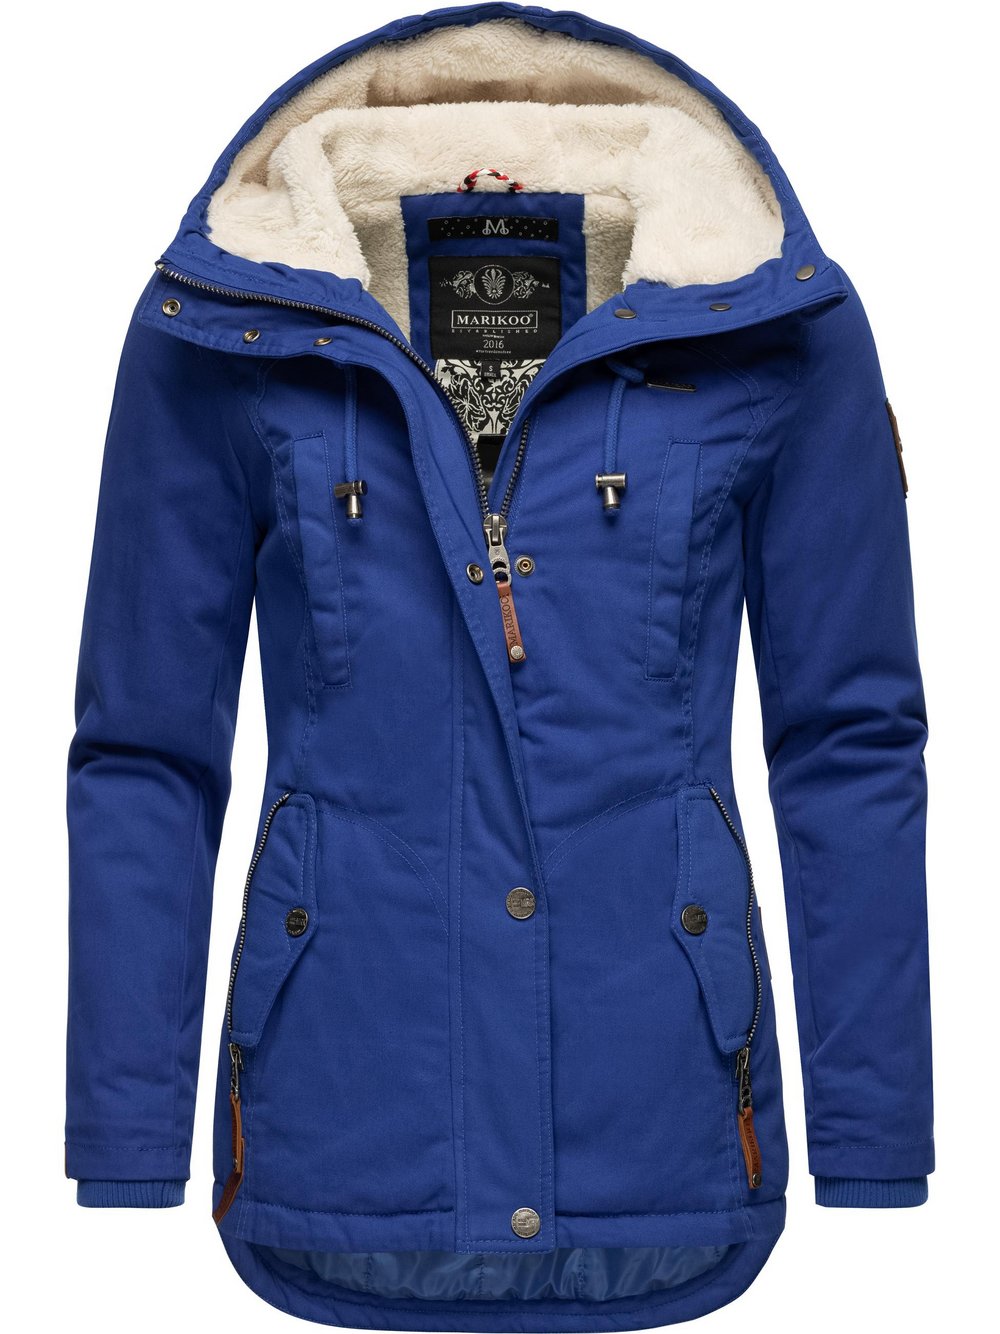 Preisvergleich für Marikoo Damen Winterjacke - Bikoo blau Gr. M, aus  Baumwolle, GTIN: 4062648095684 | Ladendirekt